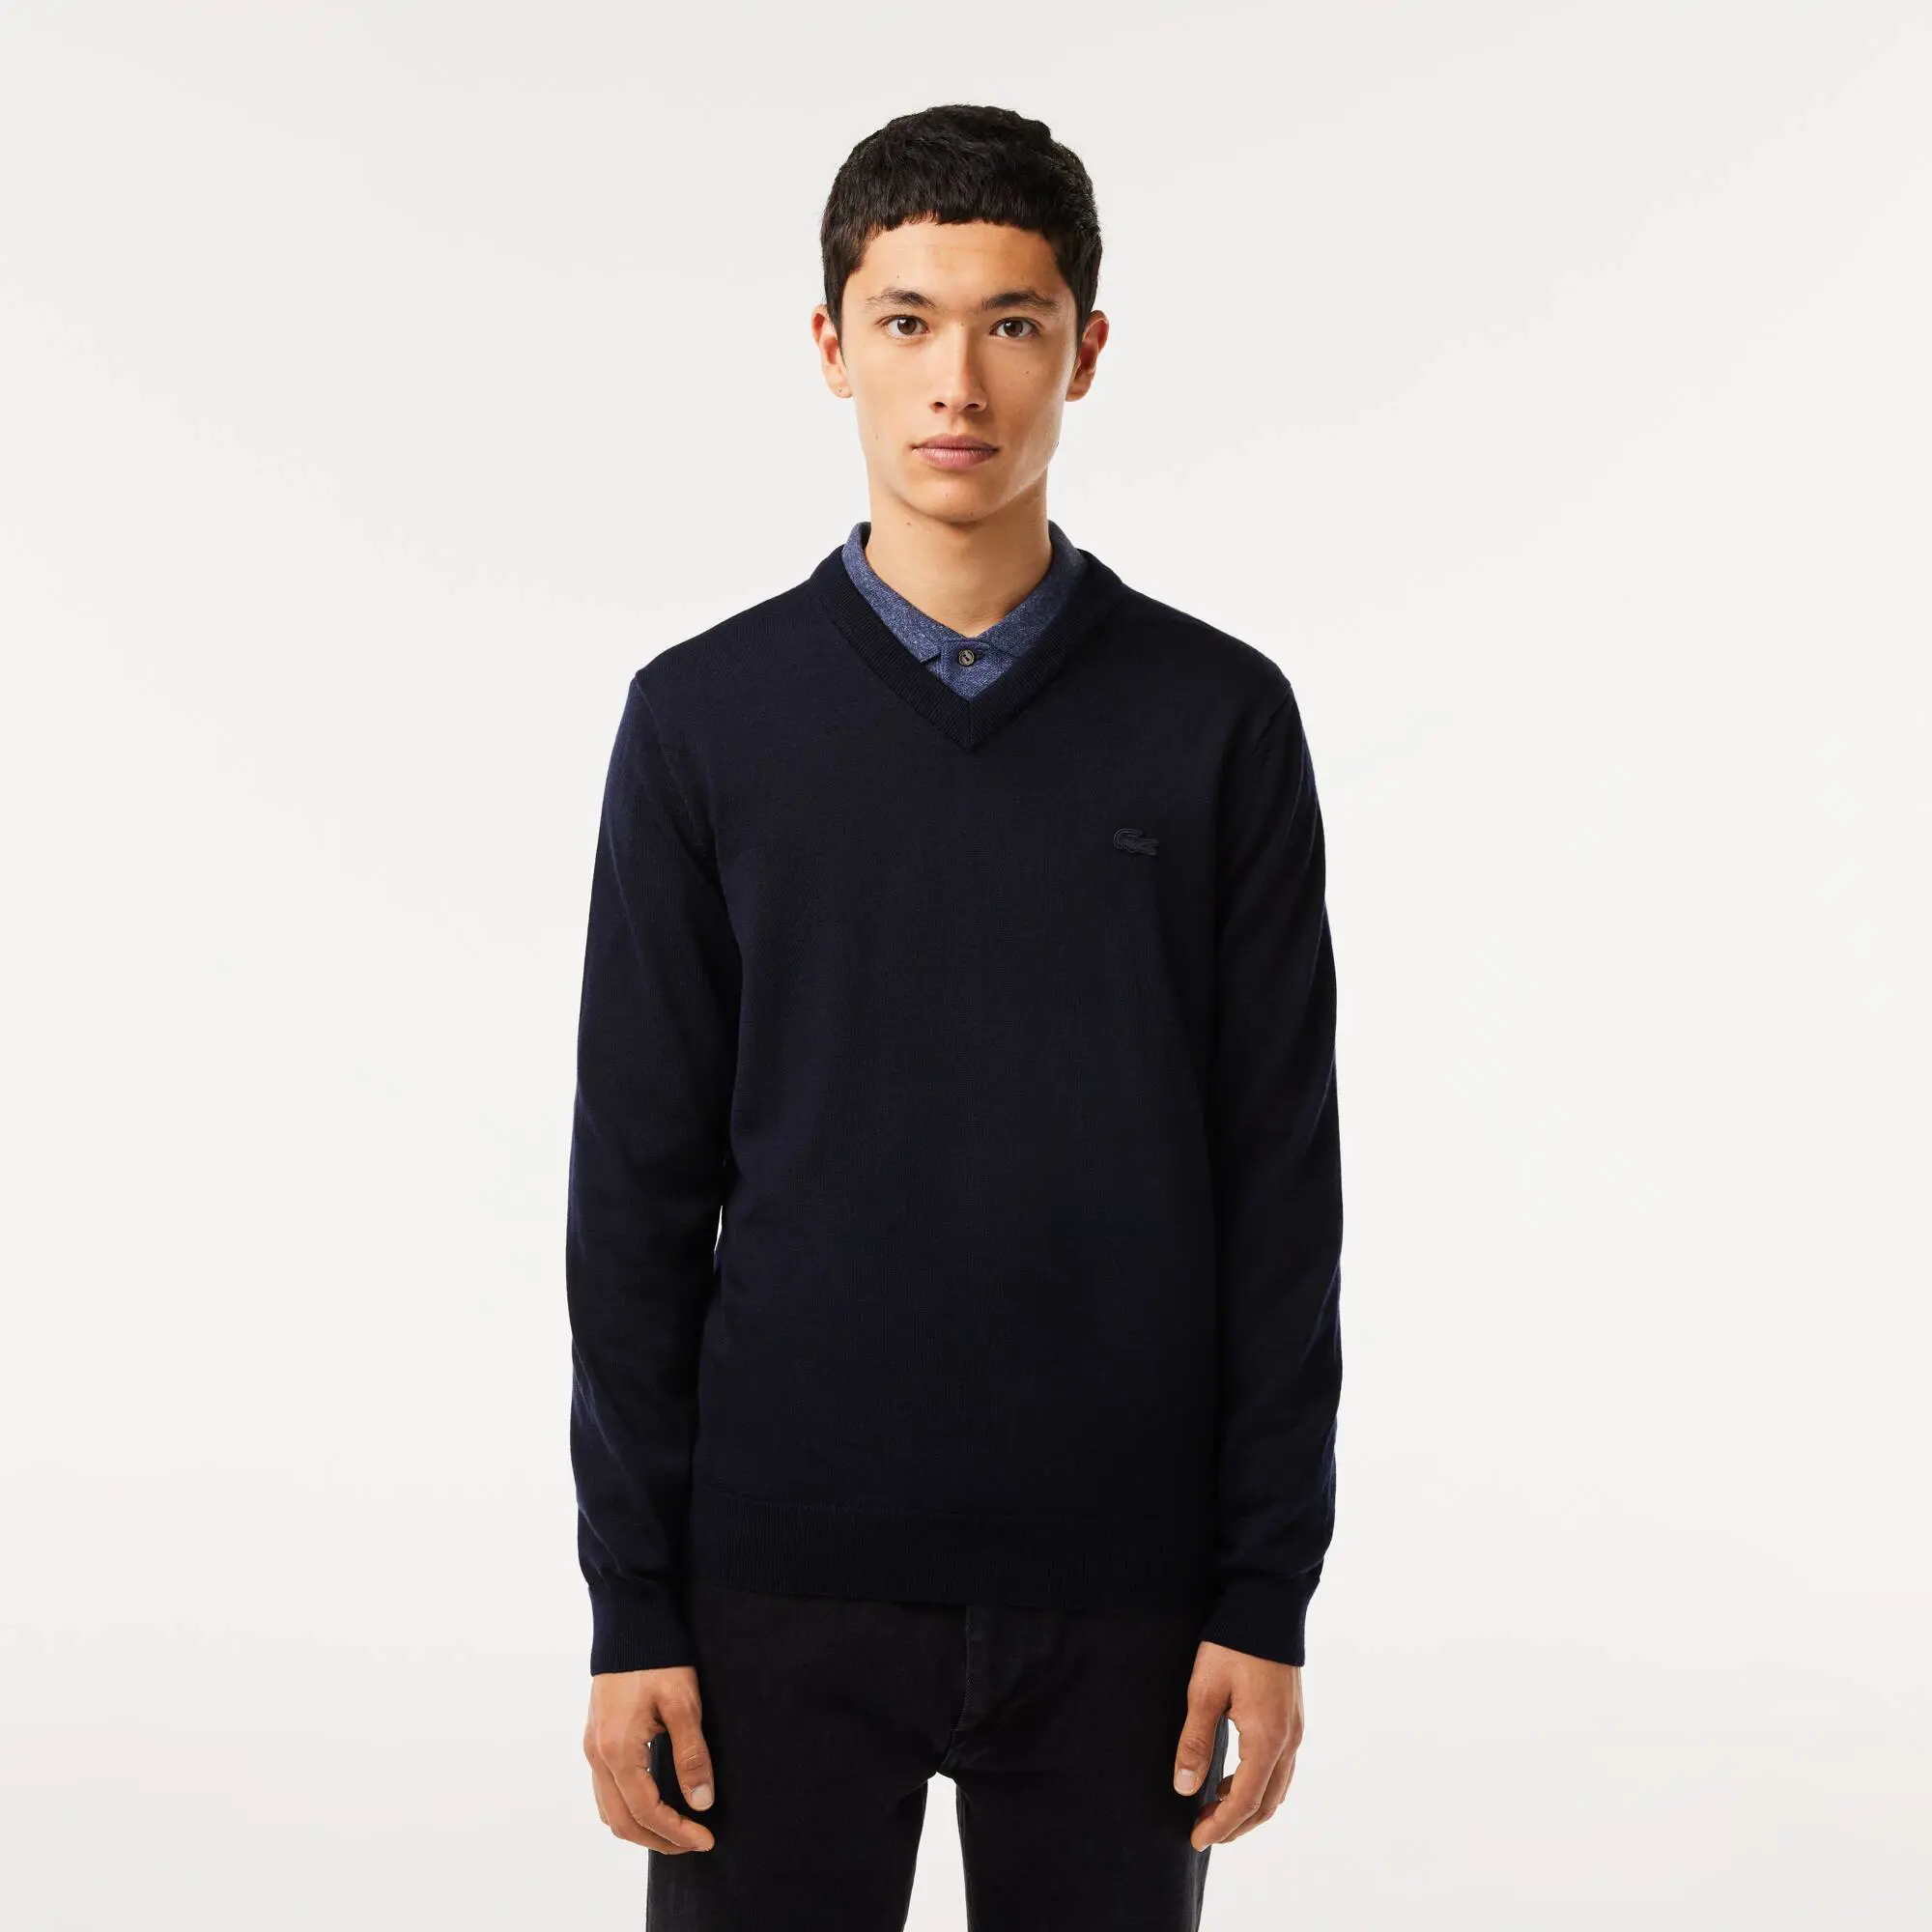 Lacoste Men's V-Neck Merino Wool Sweater. 1